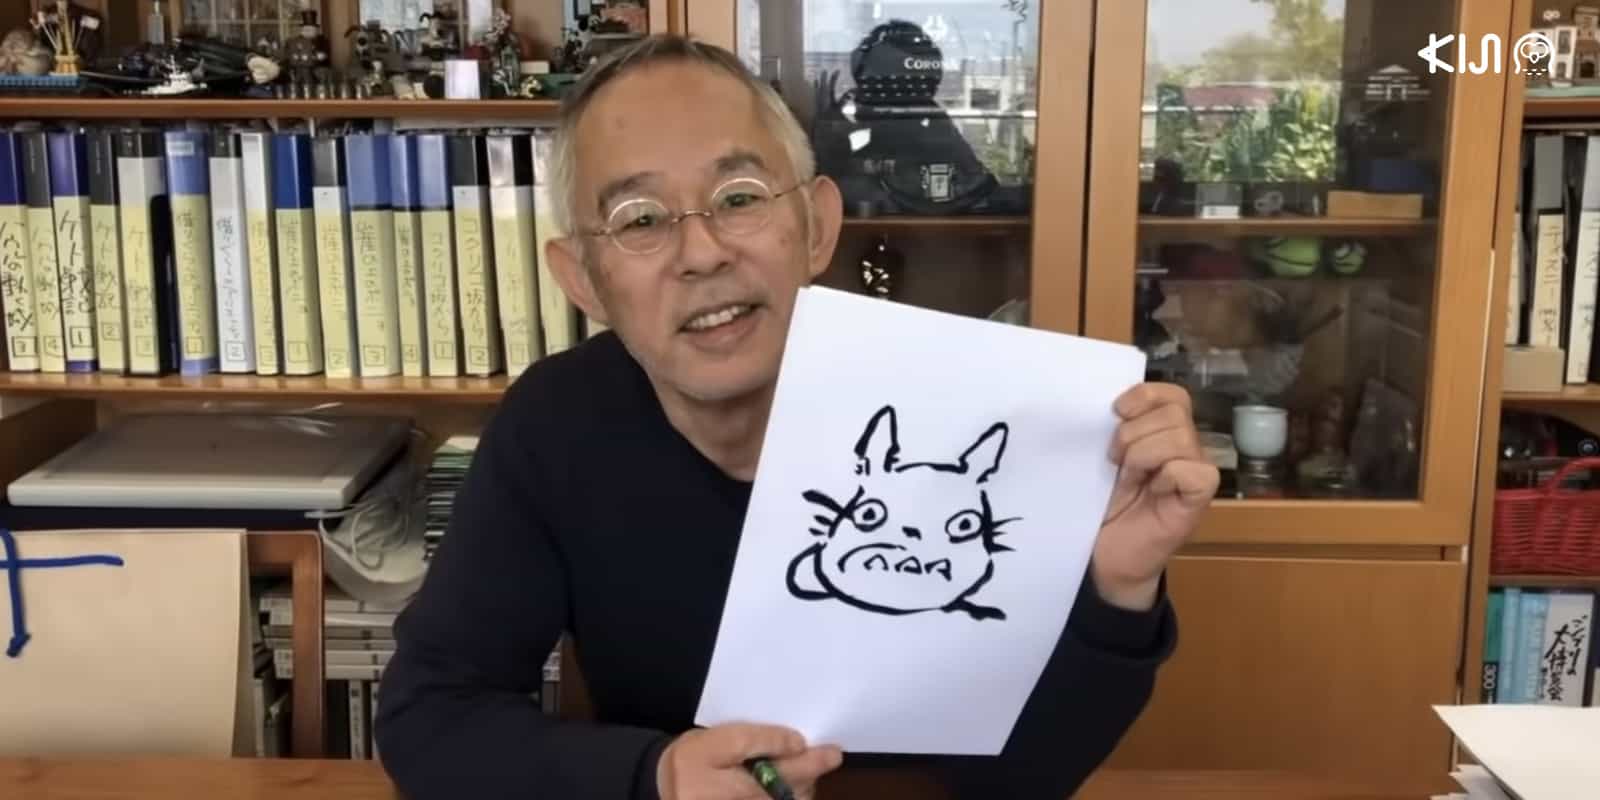 โทชิโอะ ซูซูกิ หนึ่งในผู้สร้างสตูดิโอจิบลิ ปล่อยวิดีโอสอนวาด โตโตโระ